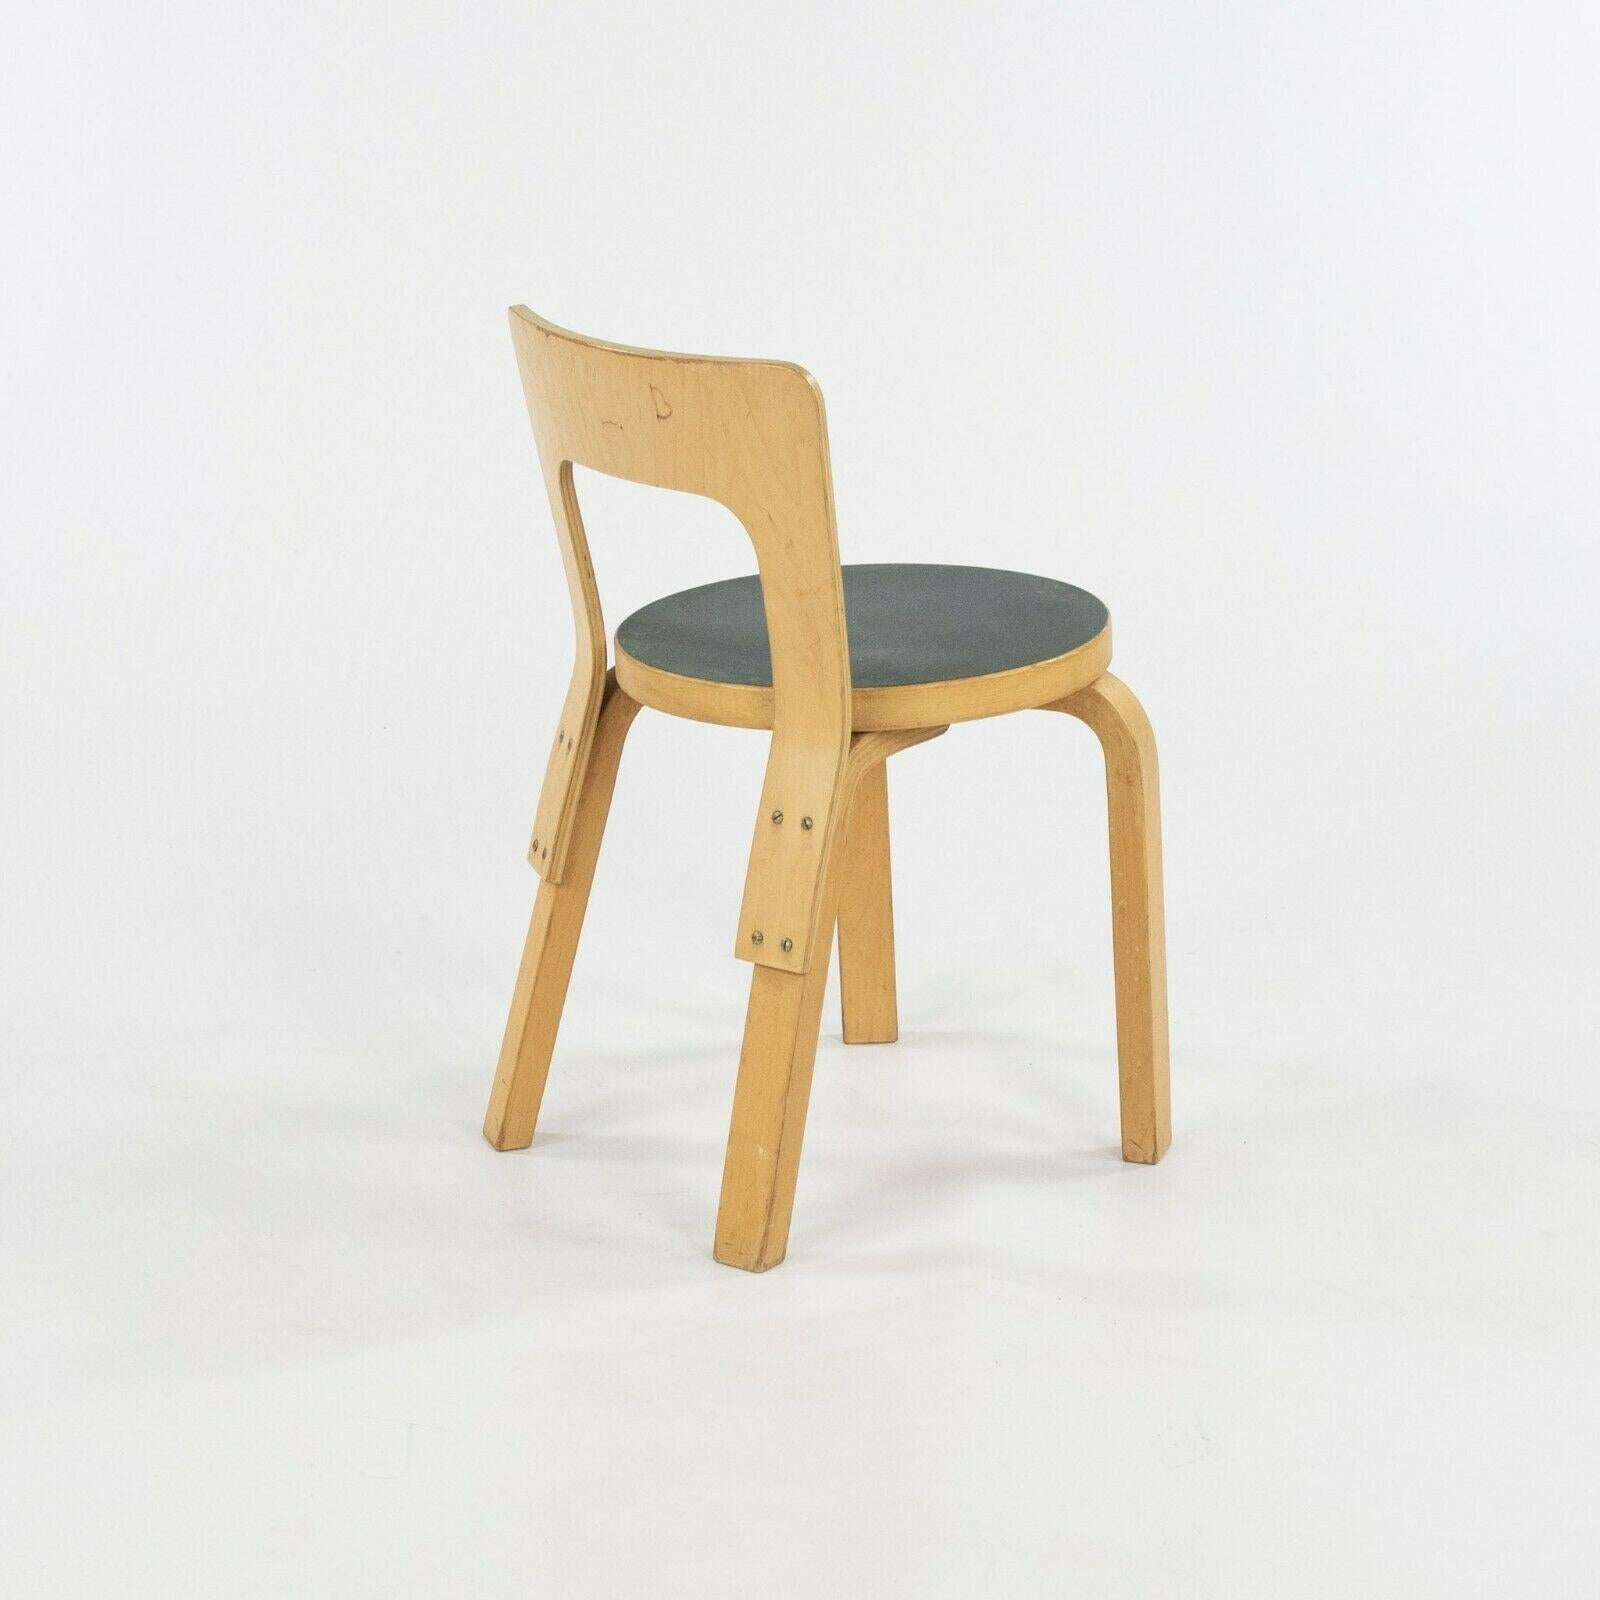 Zum Verkauf steht ein Paar N65 Kinderstühle aus den 1950er Jahren, entworfen von Alvar und Aino Aalto, hergestellt von Artek in Finnland. Diese Stühle wurden mit blau/grünen Laminatsitzen und einer Birkensperrholzkonstruktion bestellt. Es handelt